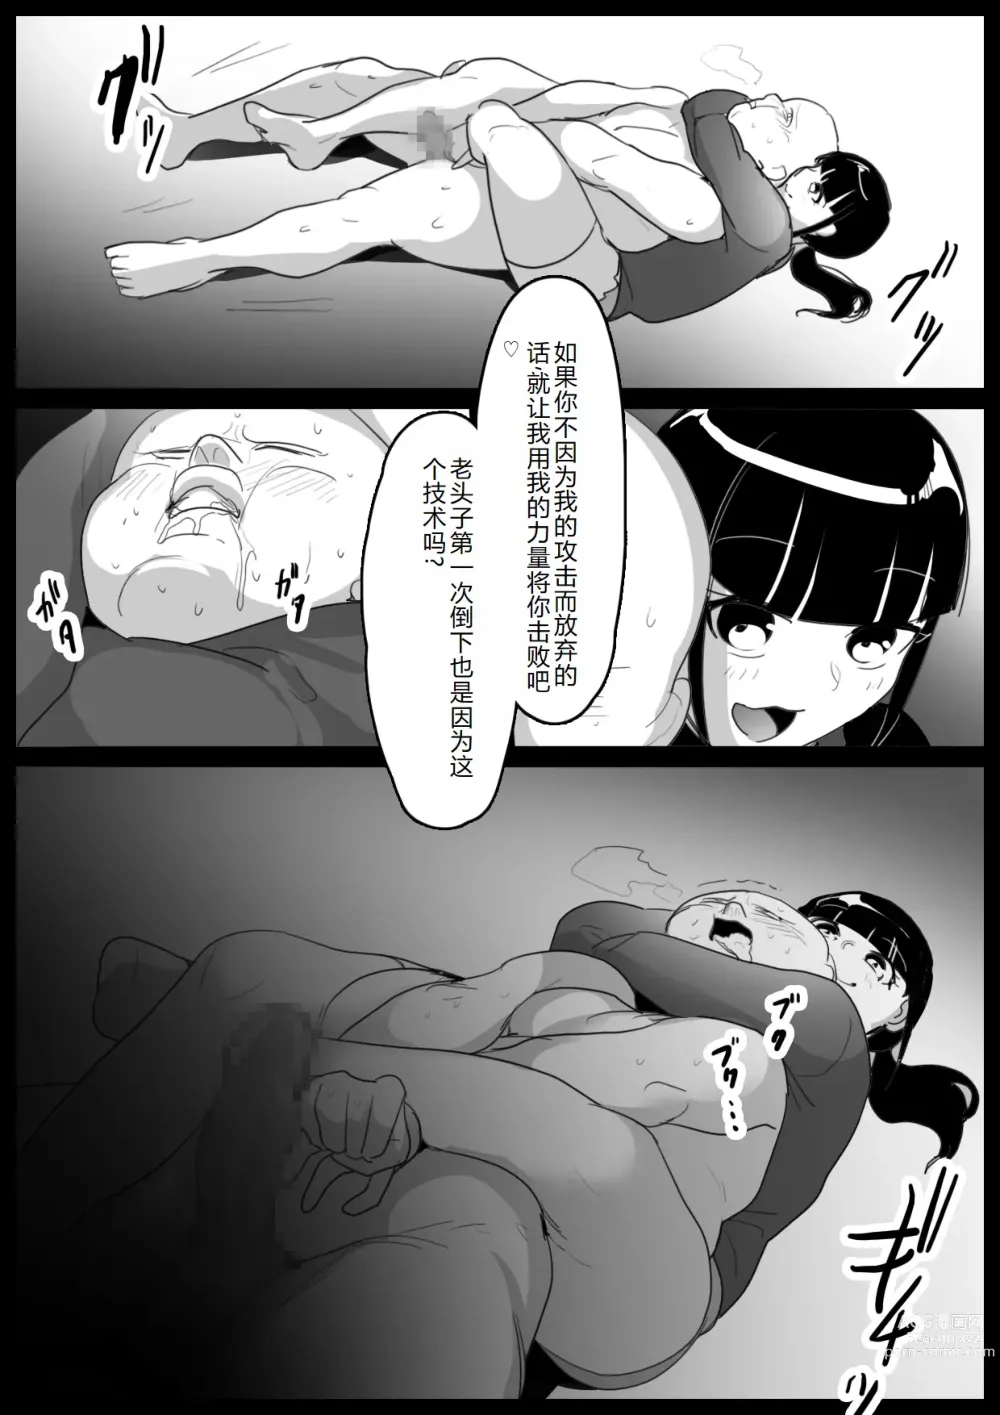 Page 8 of doujinshi 一个不擅长受臭责备的我、被一个恶心的女人抢走了钱的故事